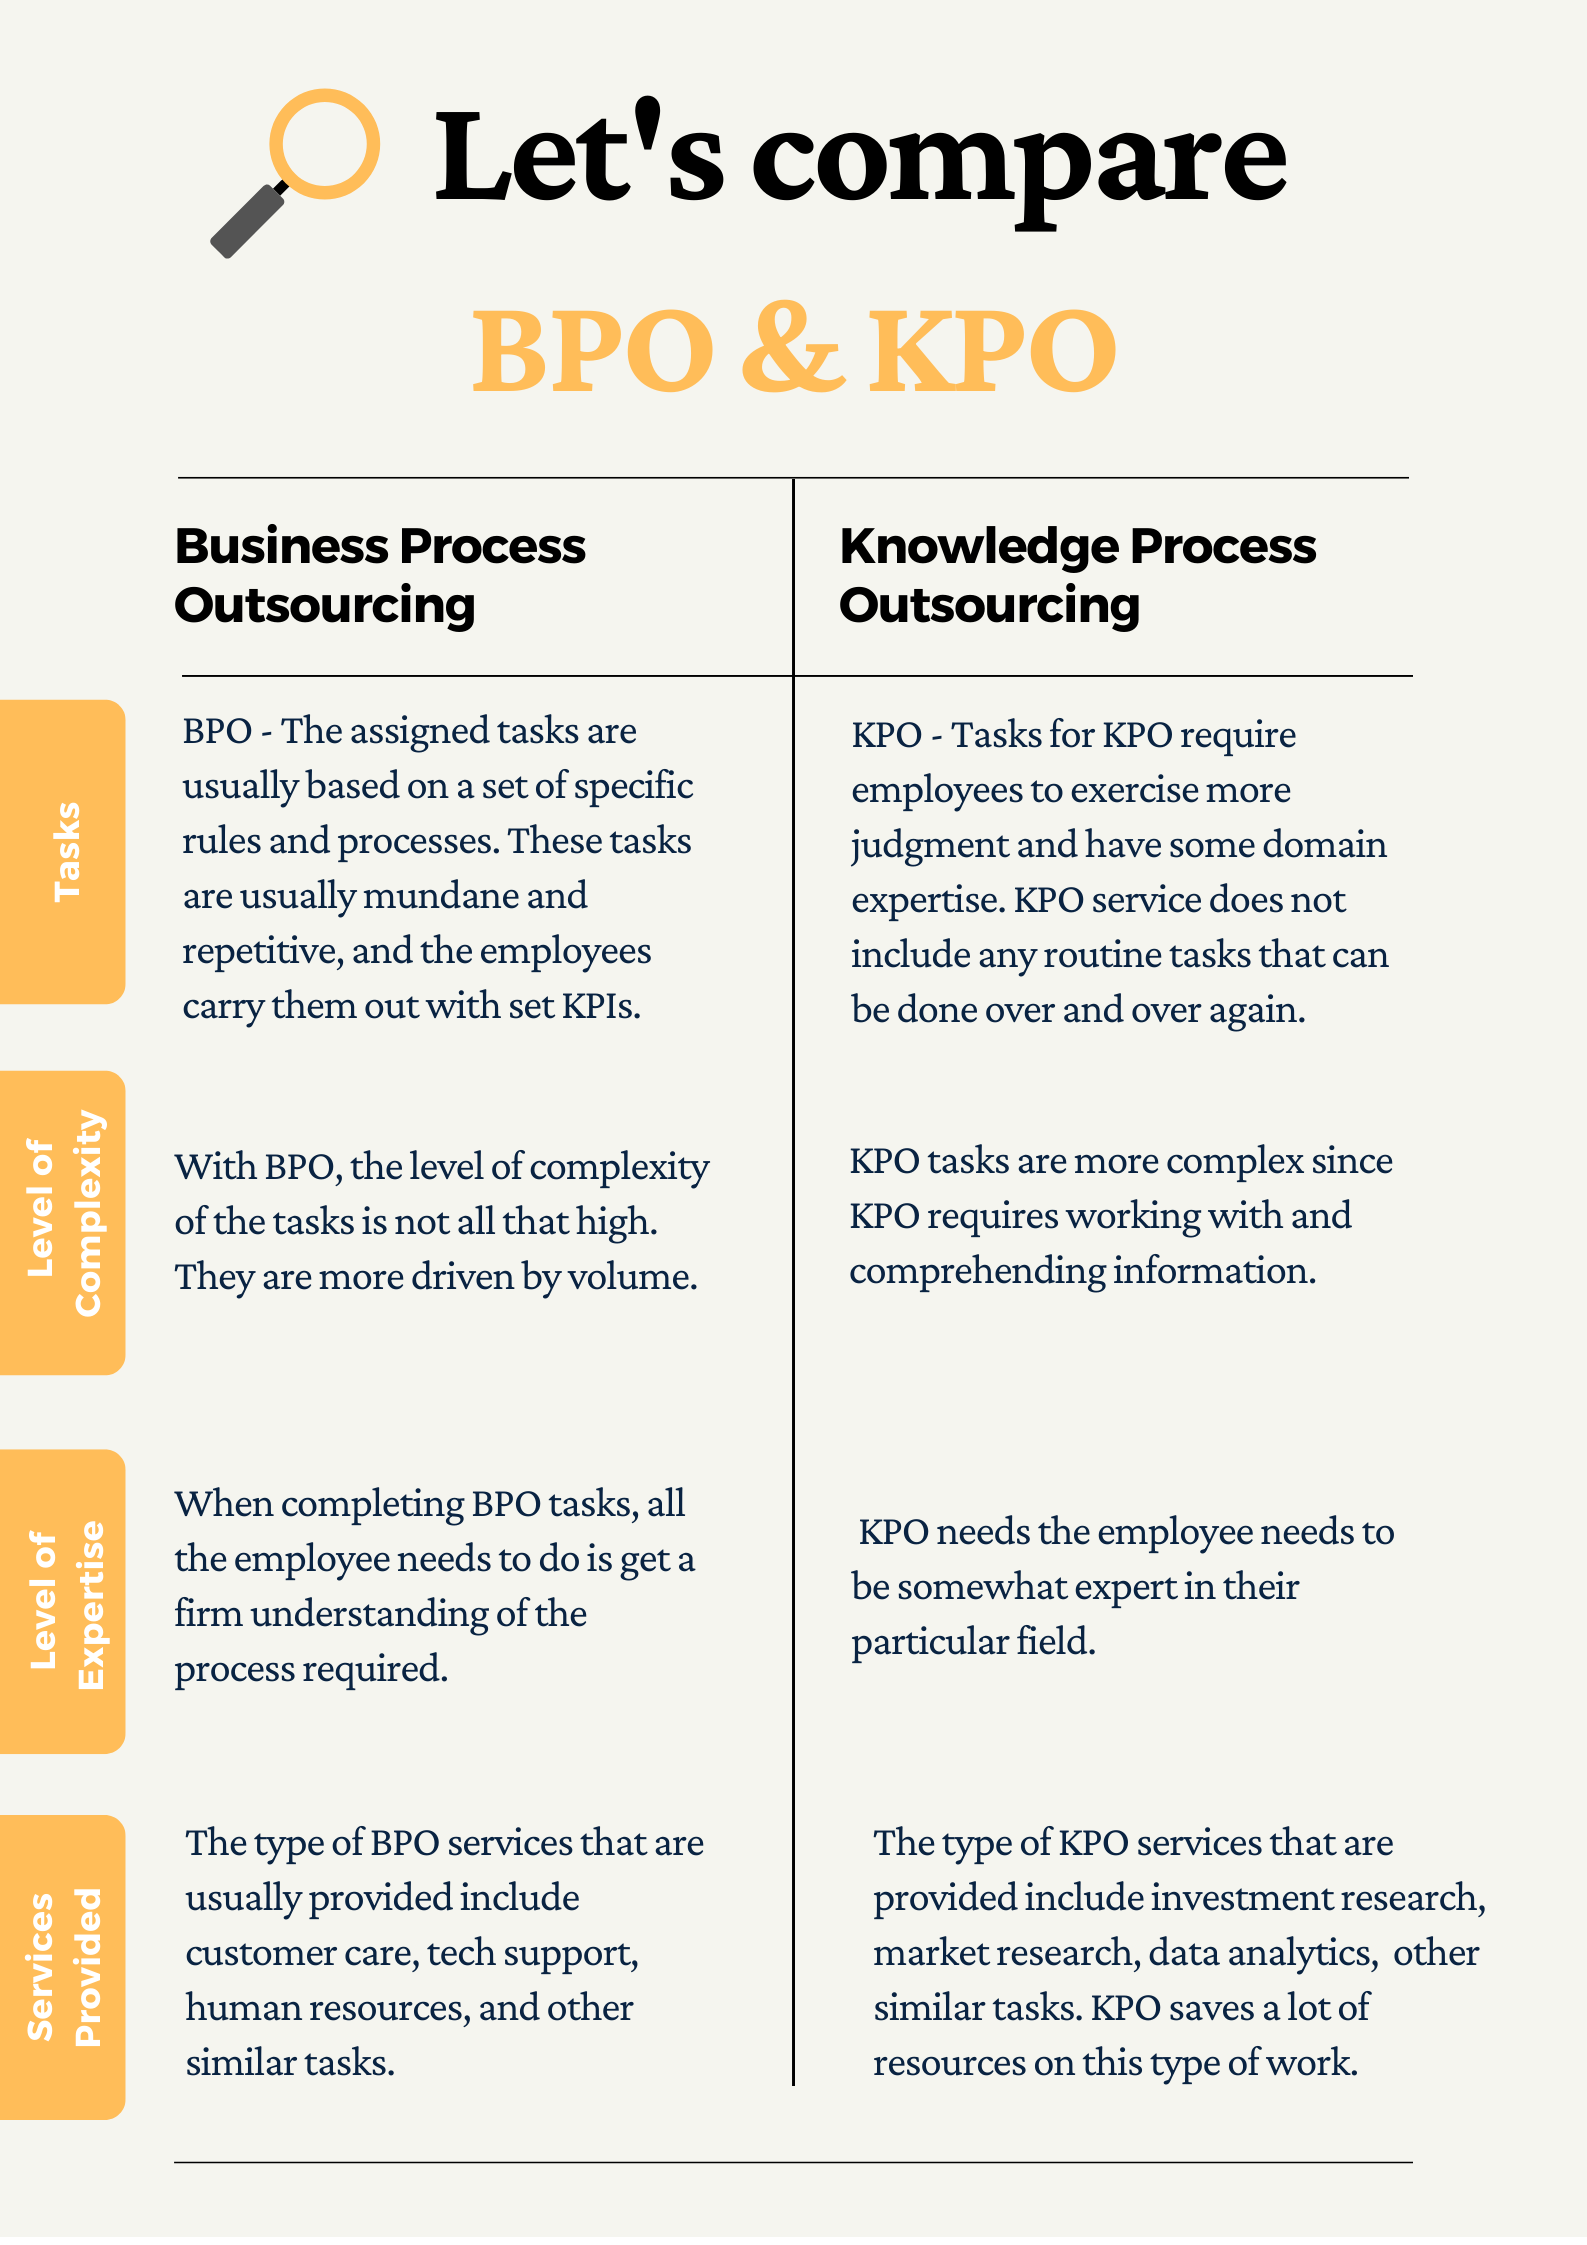 BPO vs KPO